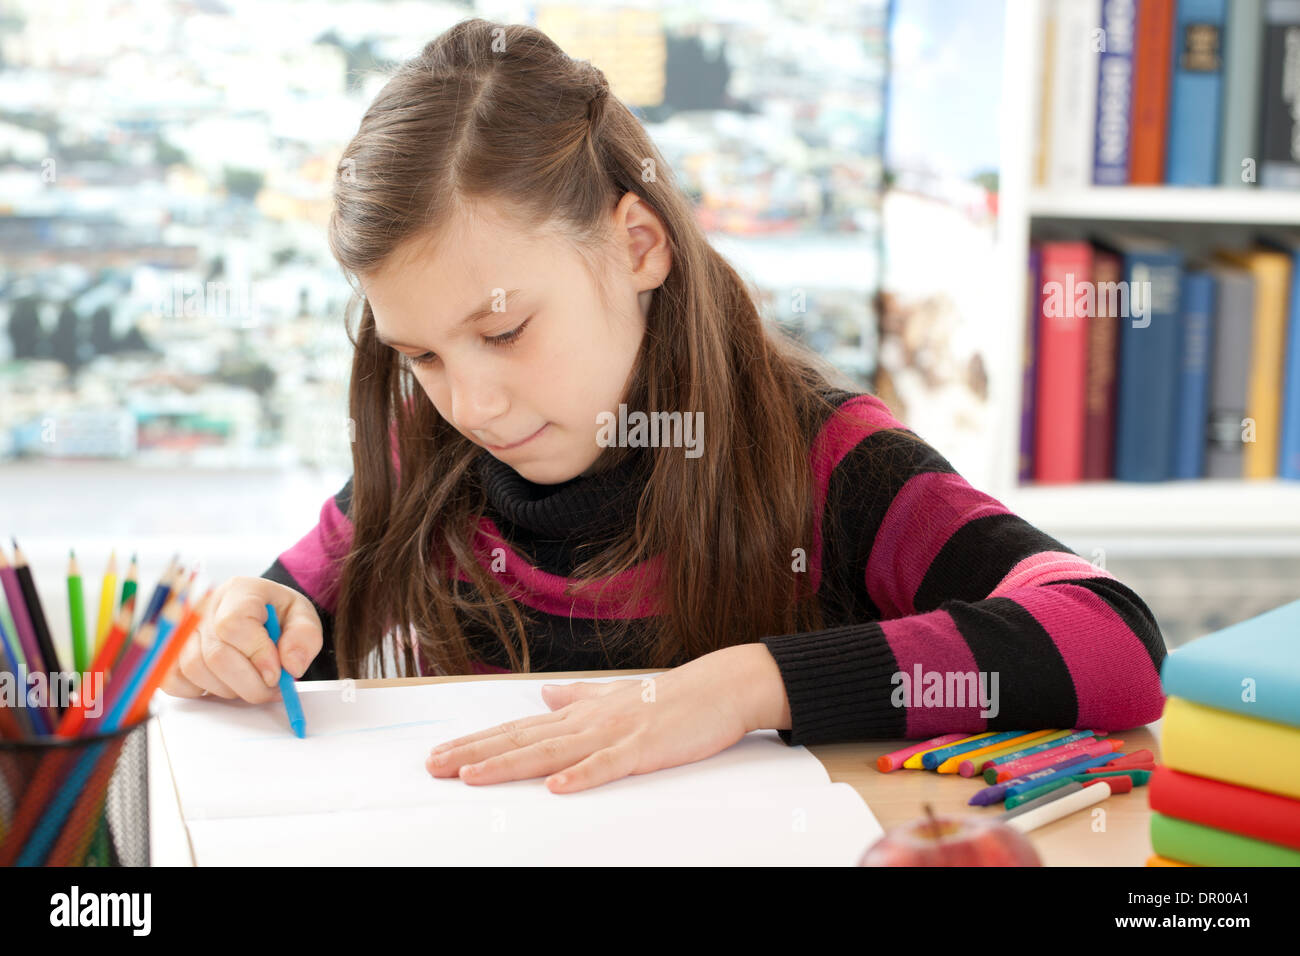 La peinture d'une petite fille photo dans son livre d'exercice Banque D'Images